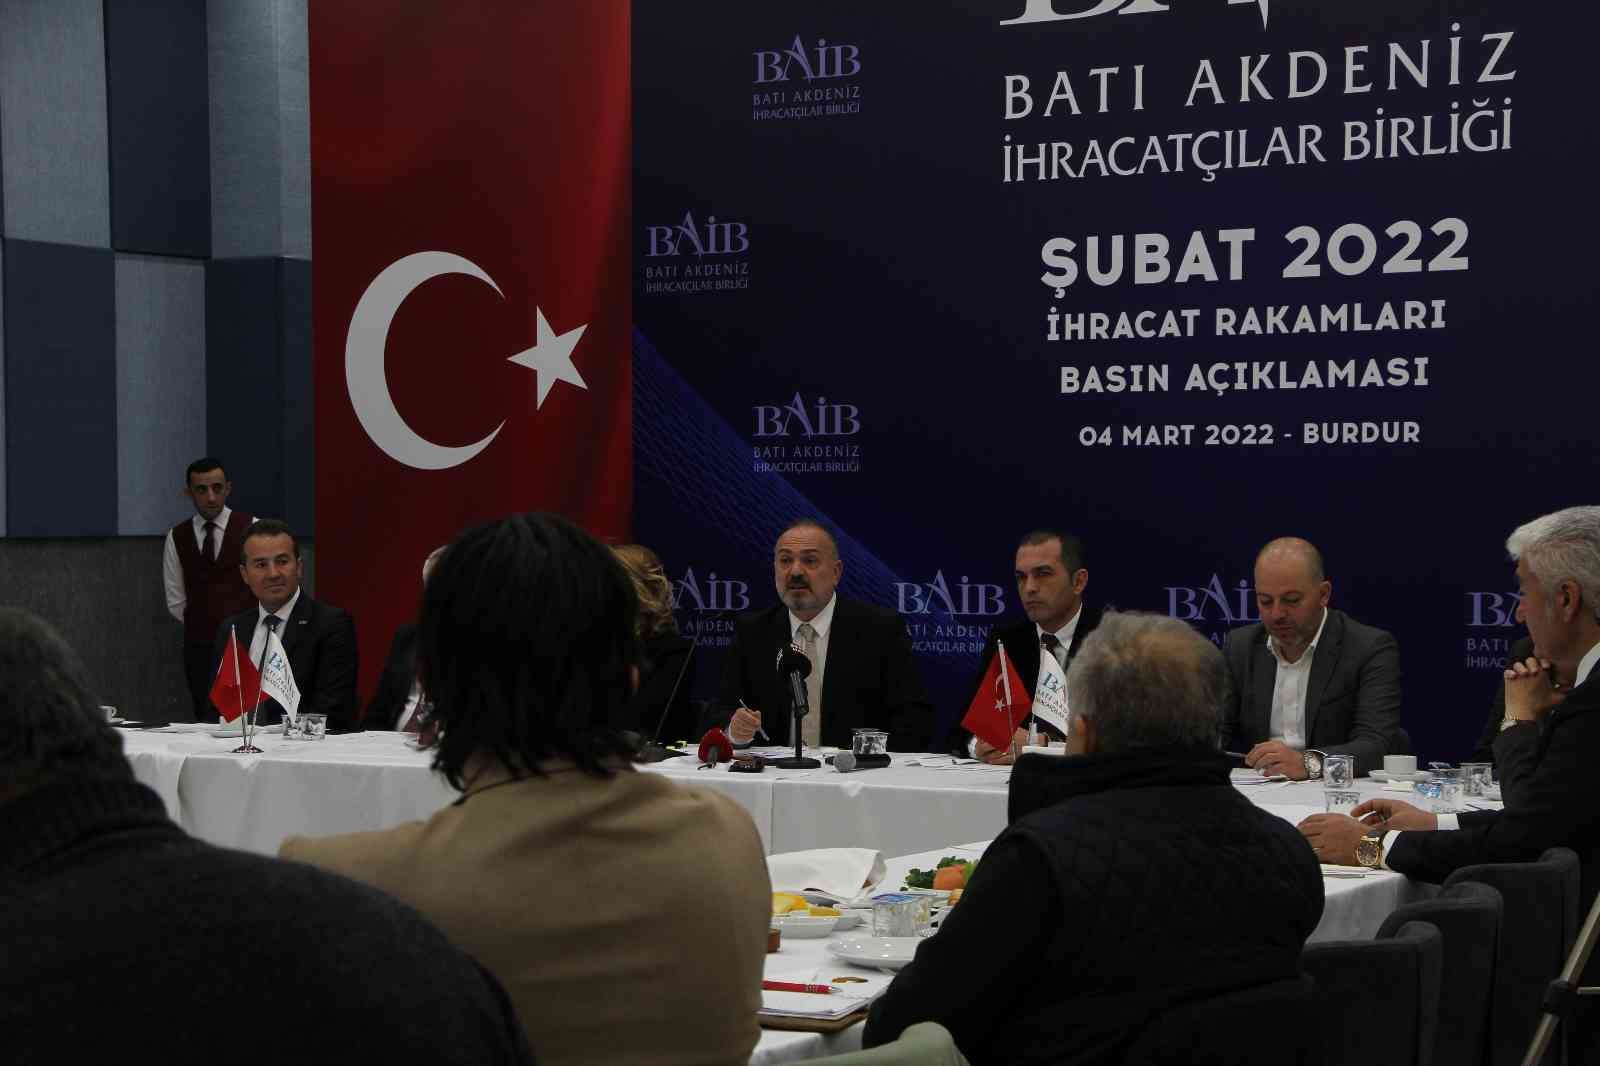 BAİB Başkanı Çavuşoğlu: “Bölgesel ihracat rakamı 420 milyon dolara yaklaştı” #burdur